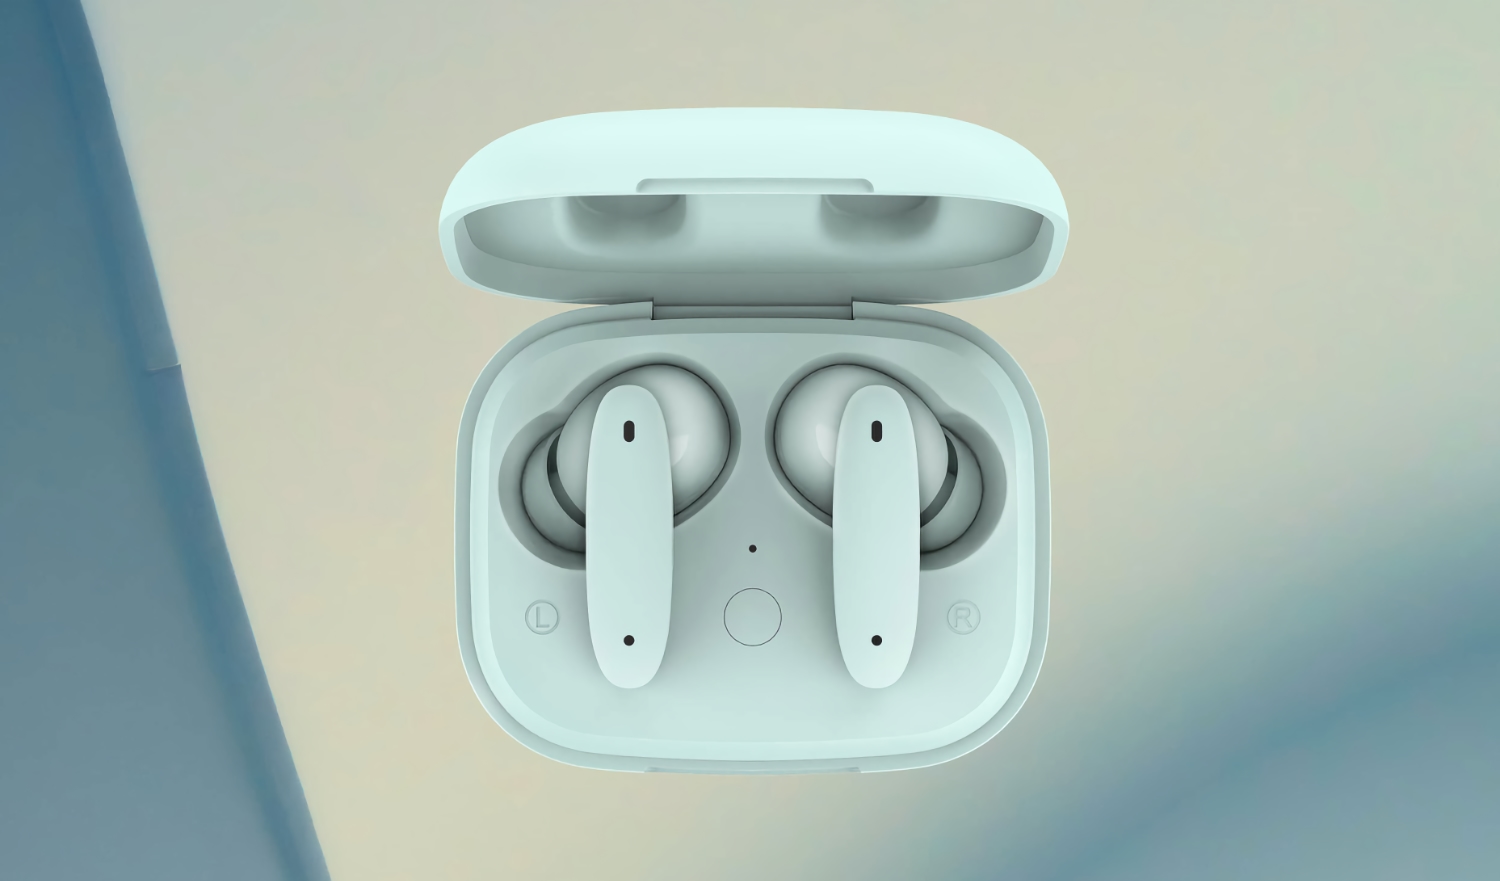 Meizu mBlu Blus+: TWS-Kopfhörer mit aktiver Geräuschunterdrückung, drahtlosem Aufladen, IPX4-Schutz und einem Preis von 34 $